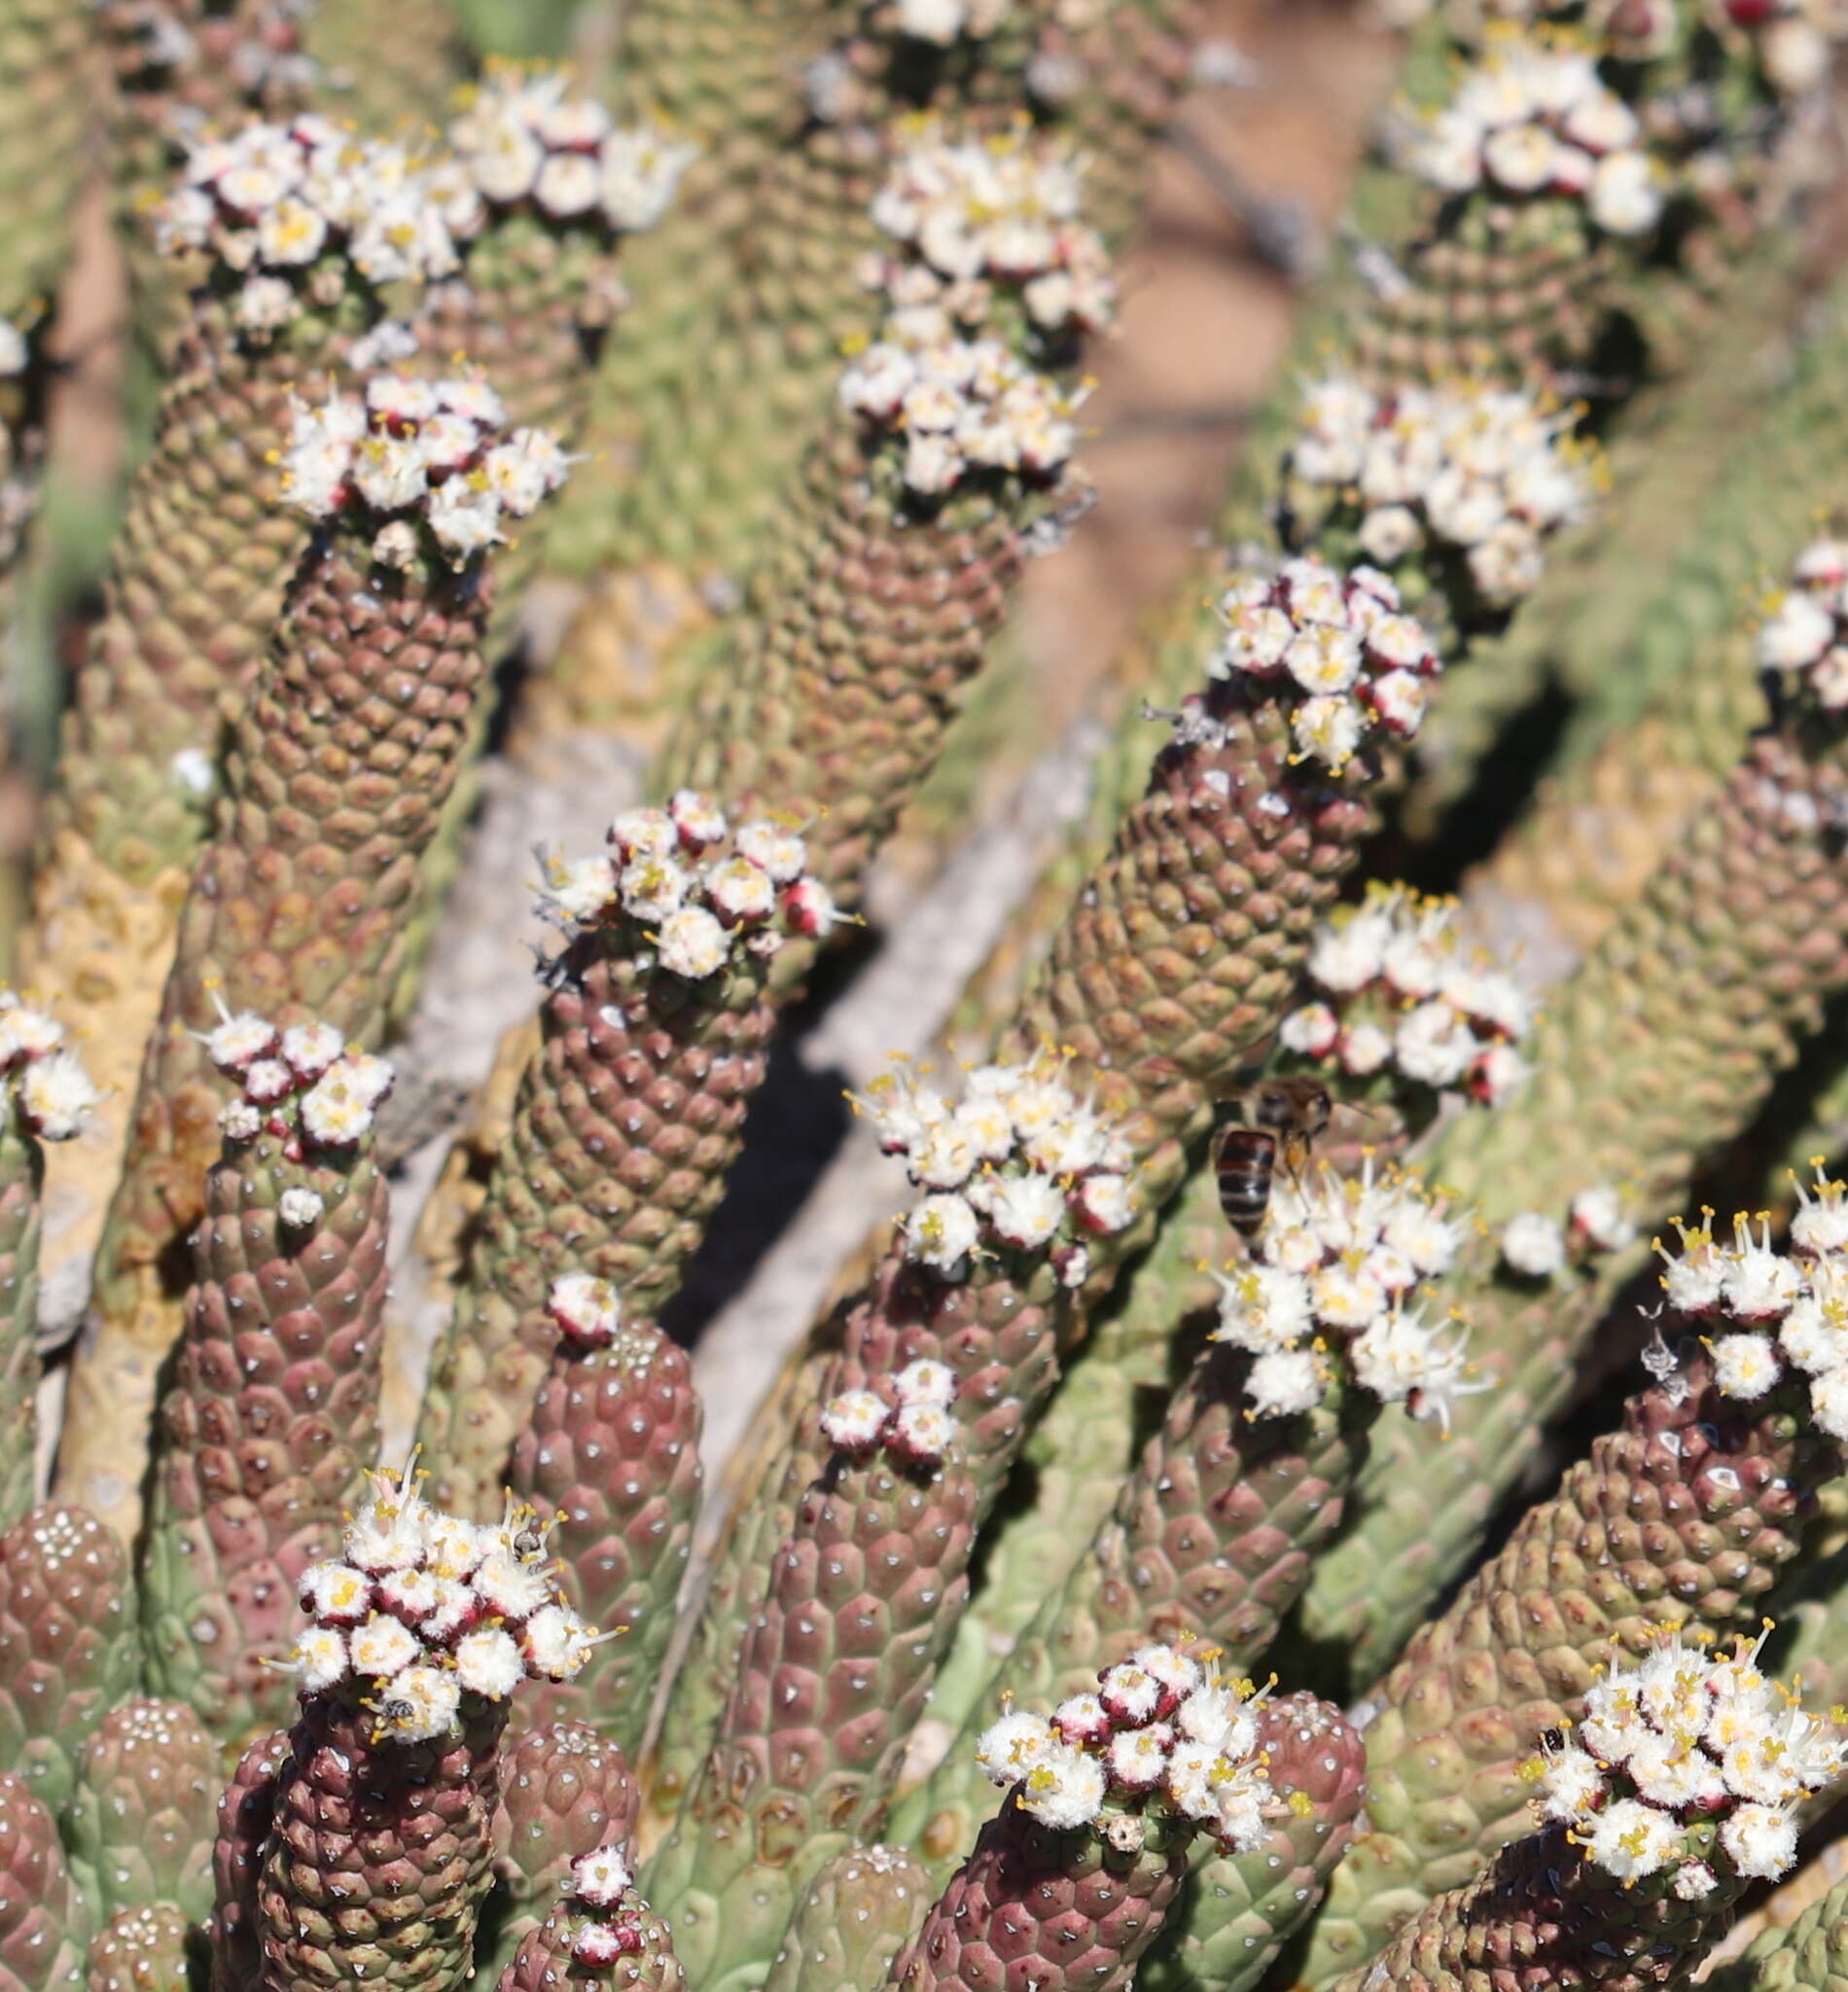 Image of Euphorbia esculenta Marloth